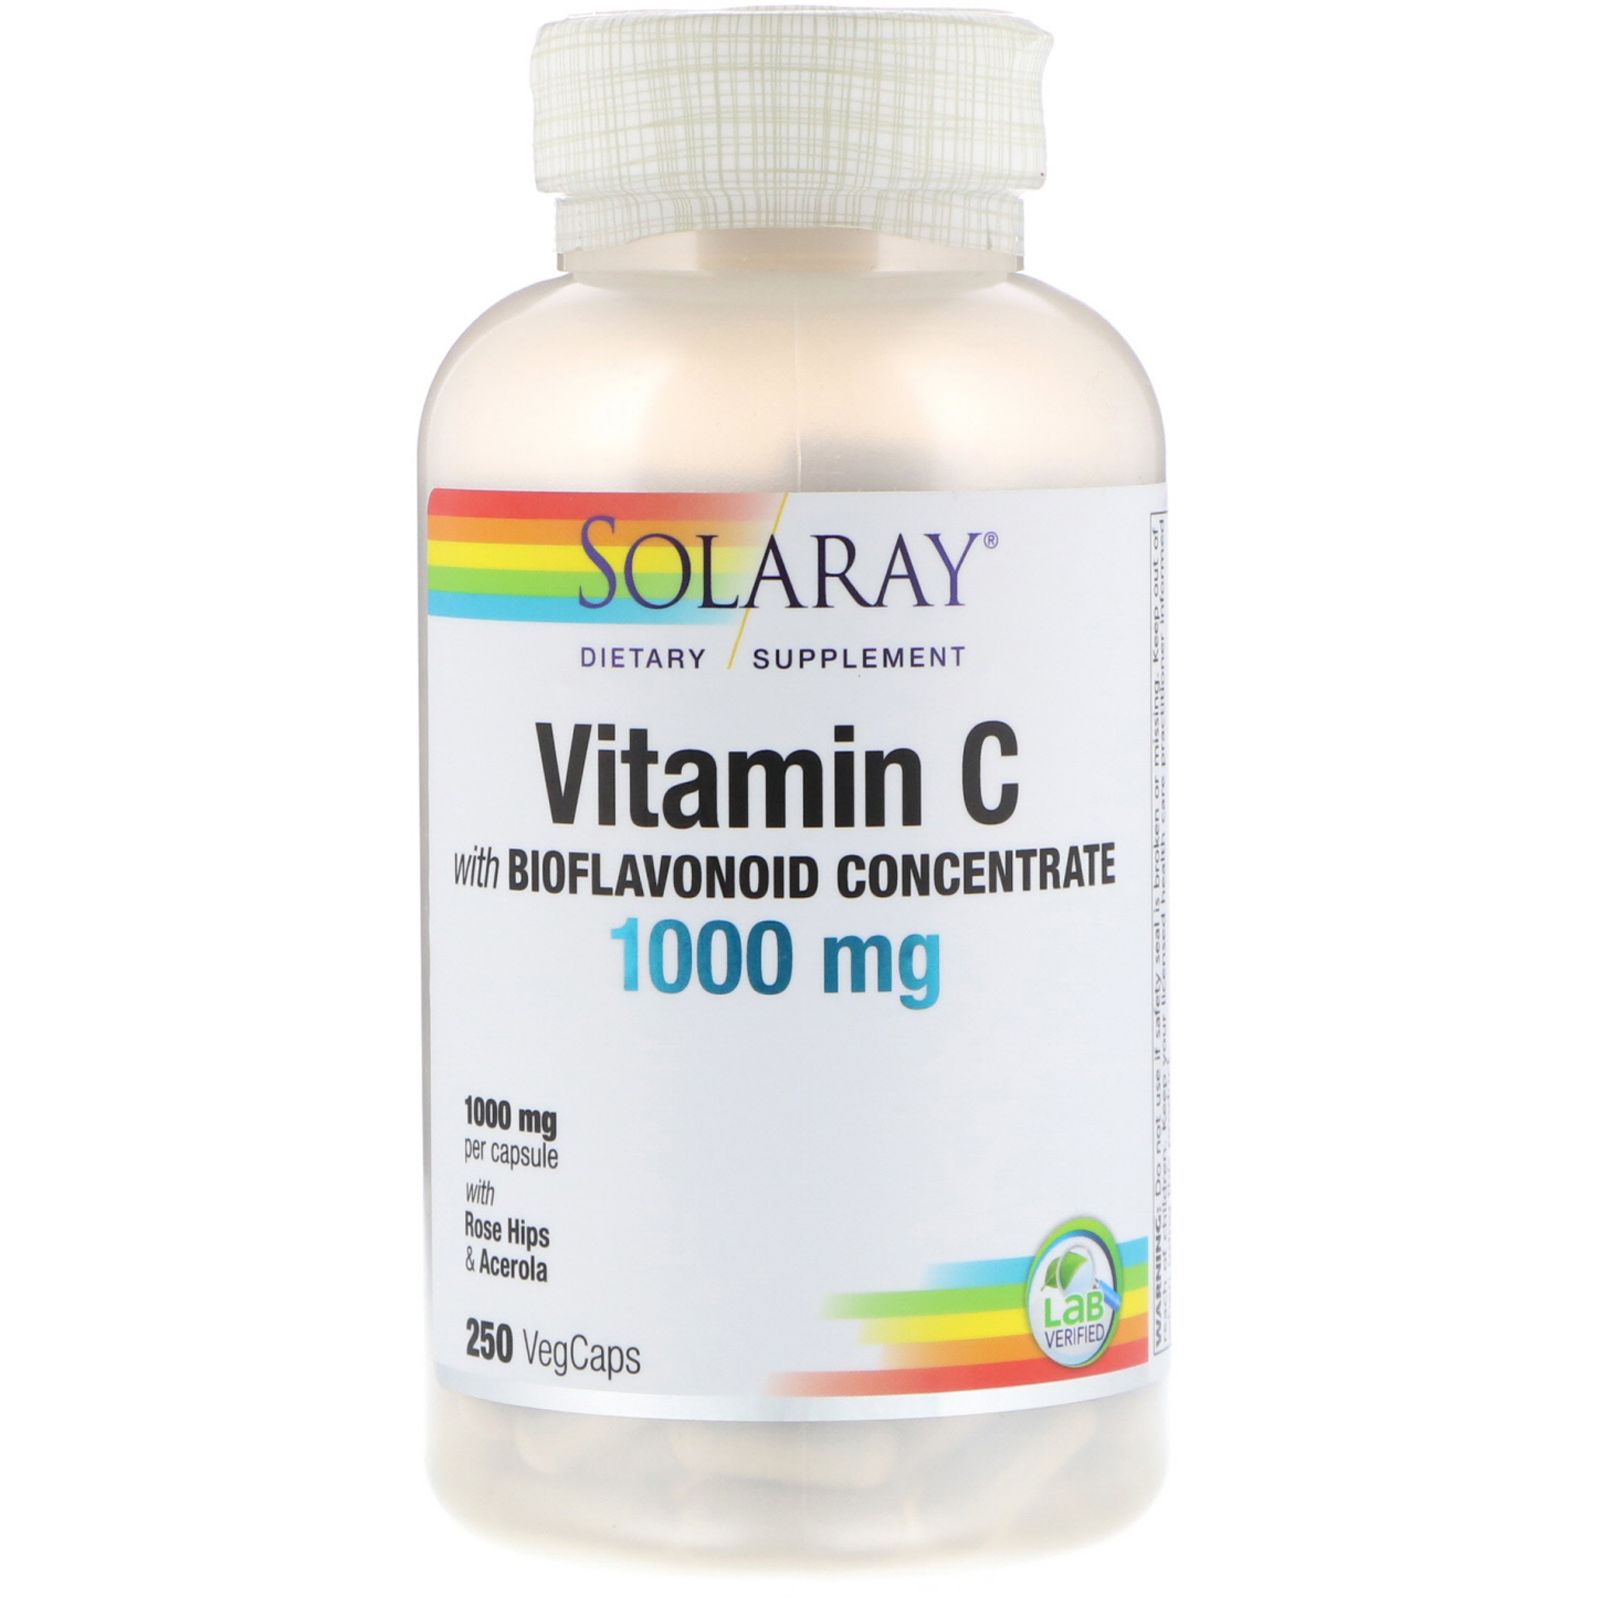 Solaray Витамин C с концентратом биофлавонида 1000 мг 250 вегетарианских капсул витамин с с концентратом биофлавоноидов 1000 мг 250 растительных капсул solaray